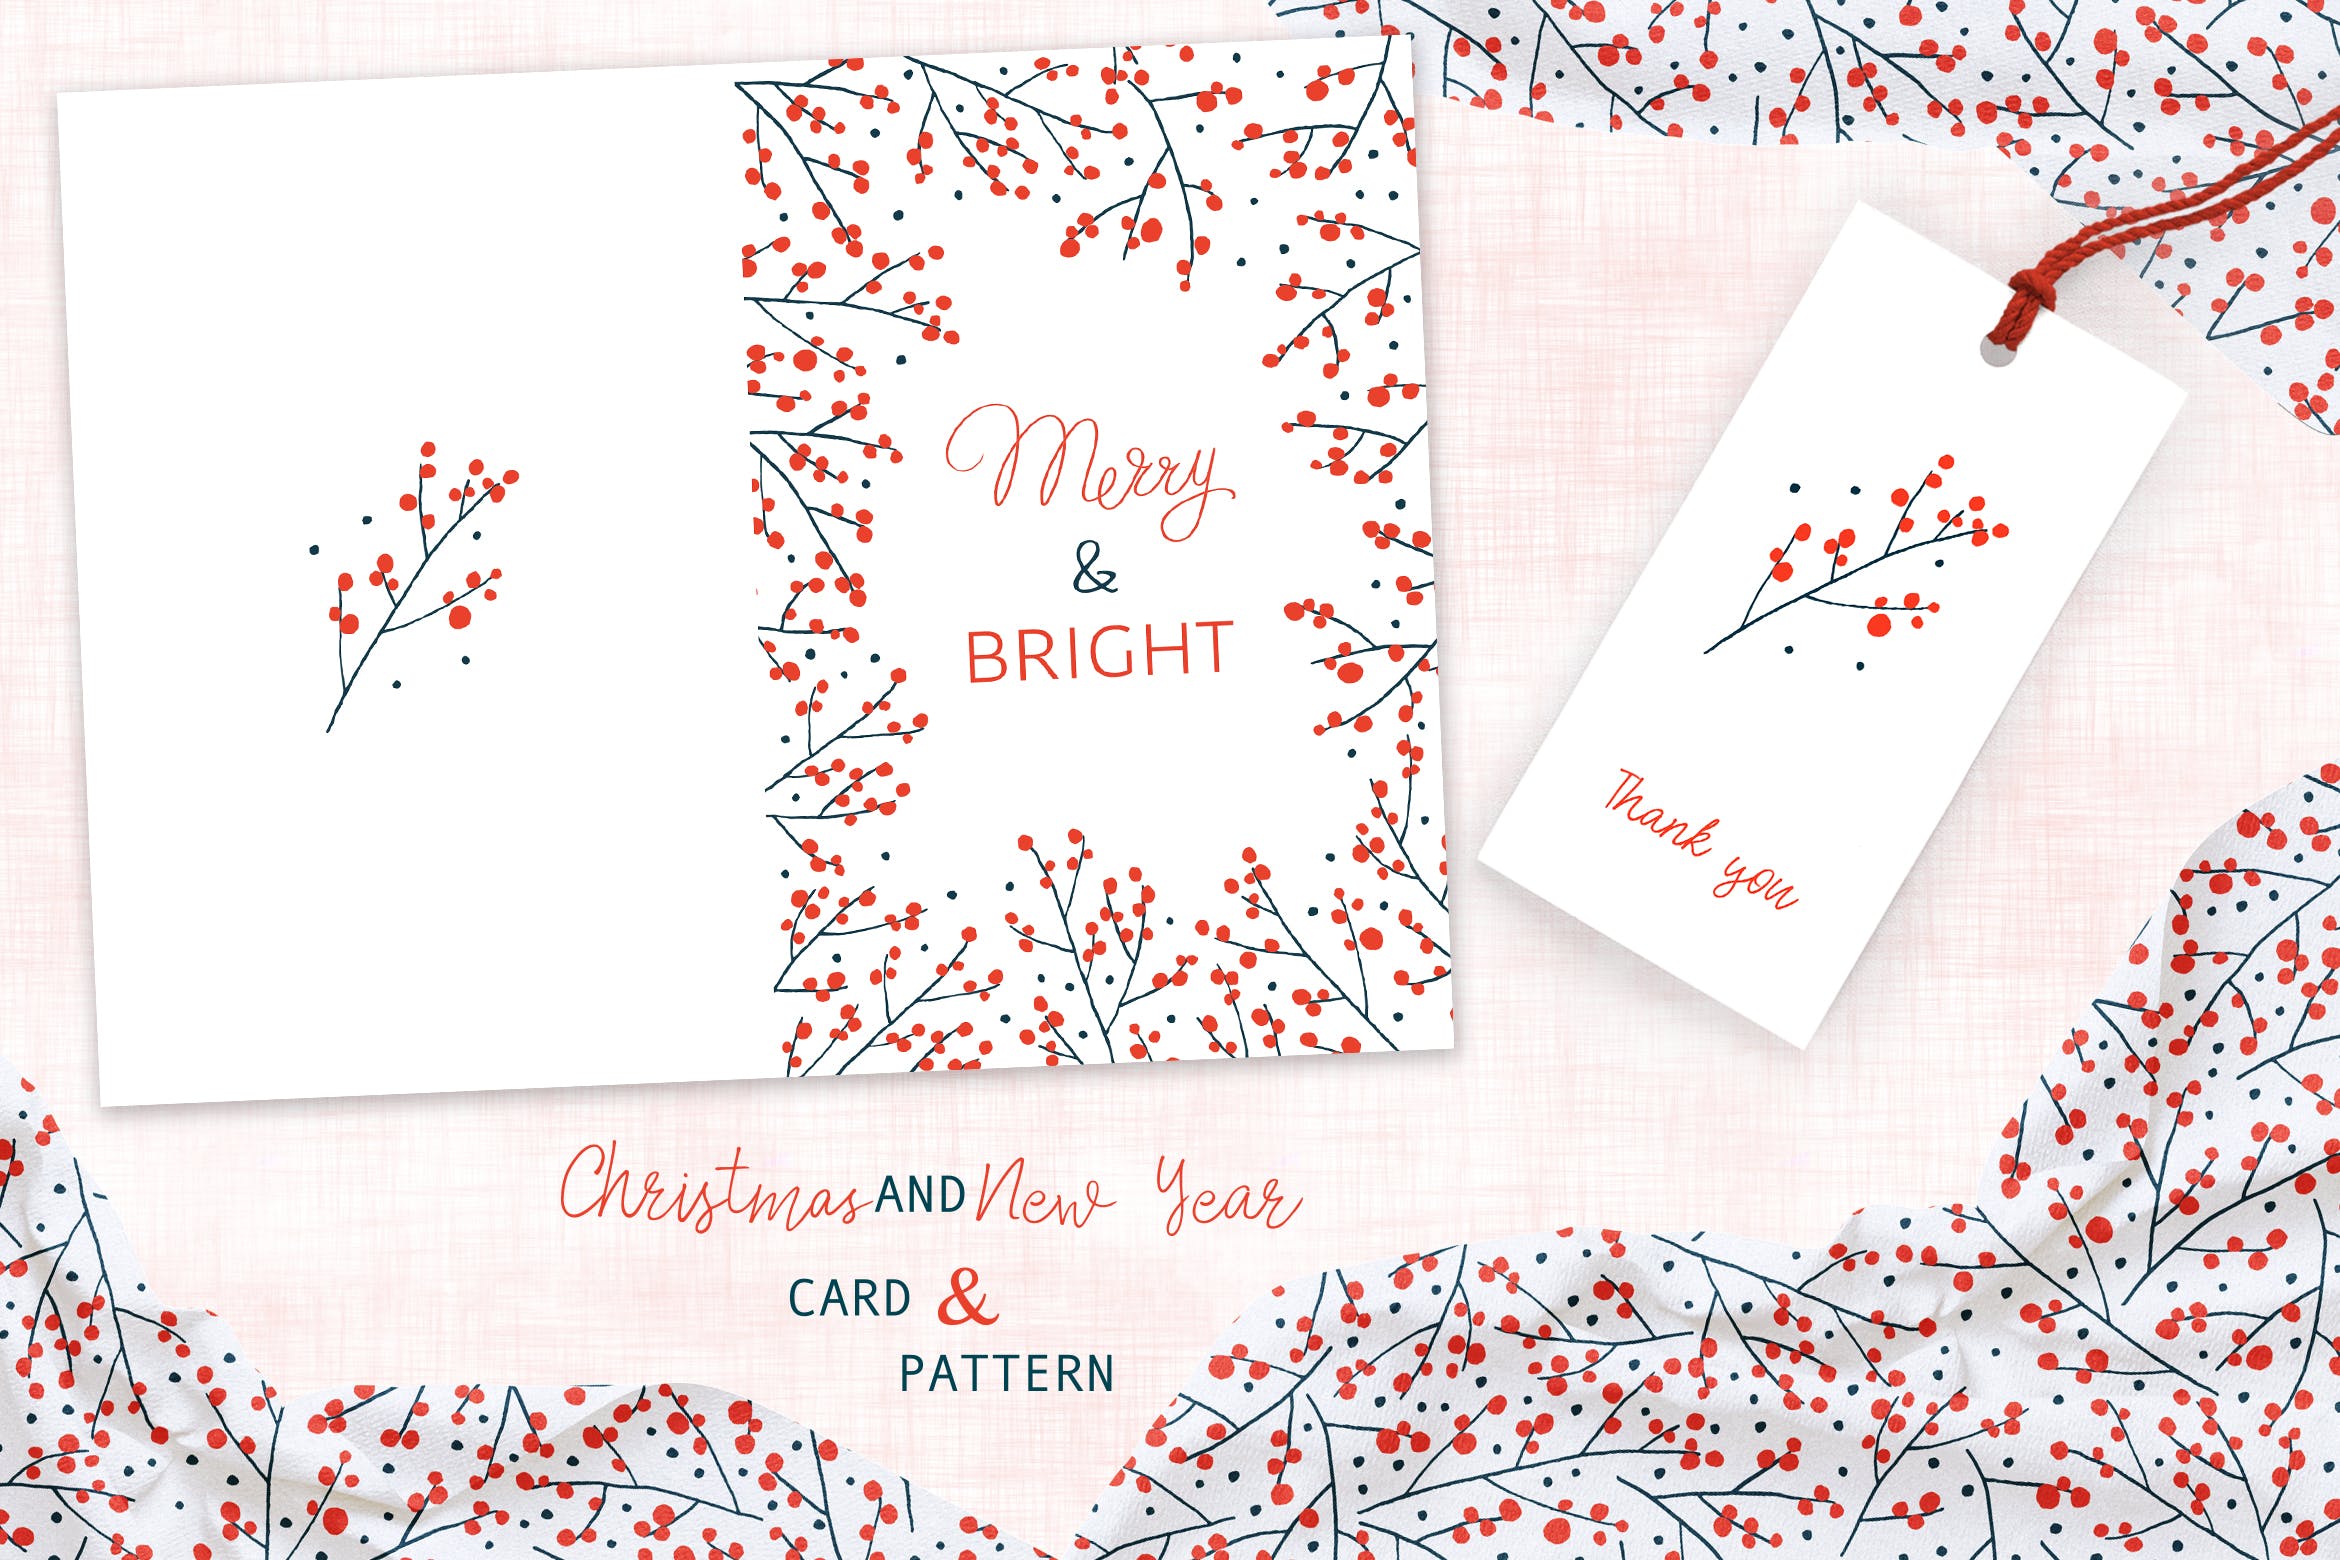 圣诞枝手绘图案背景素材 贺卡设计模板christmas Branches Greeting Card And Pattern 大洋岛素材